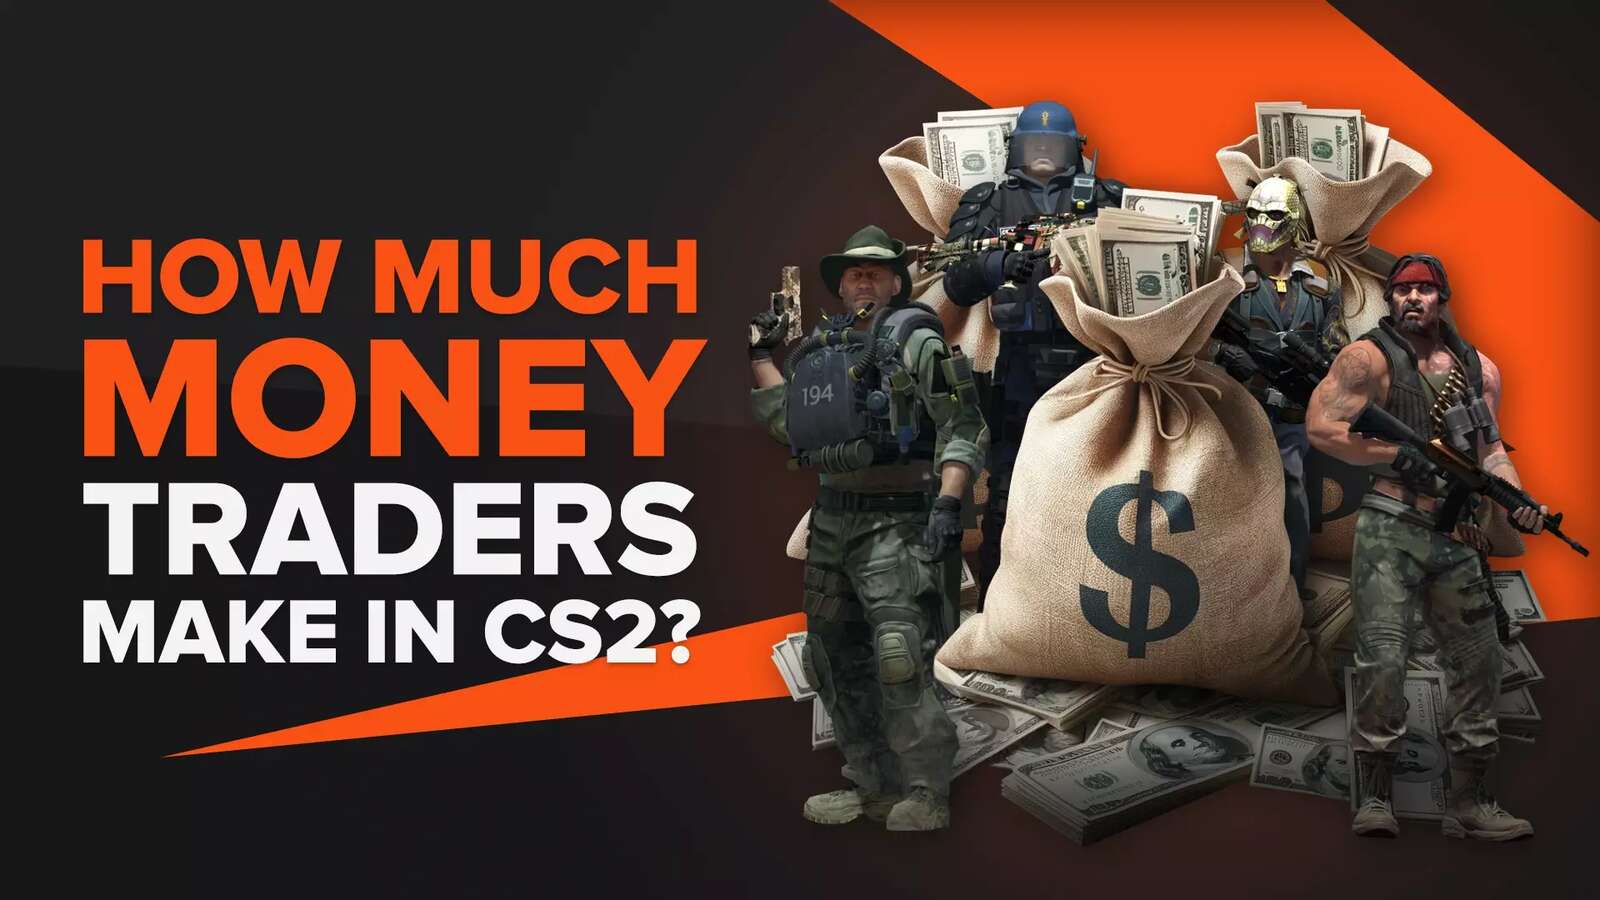 How Much Money Do CS2 (CSGO) Traders Make? (Revealed)